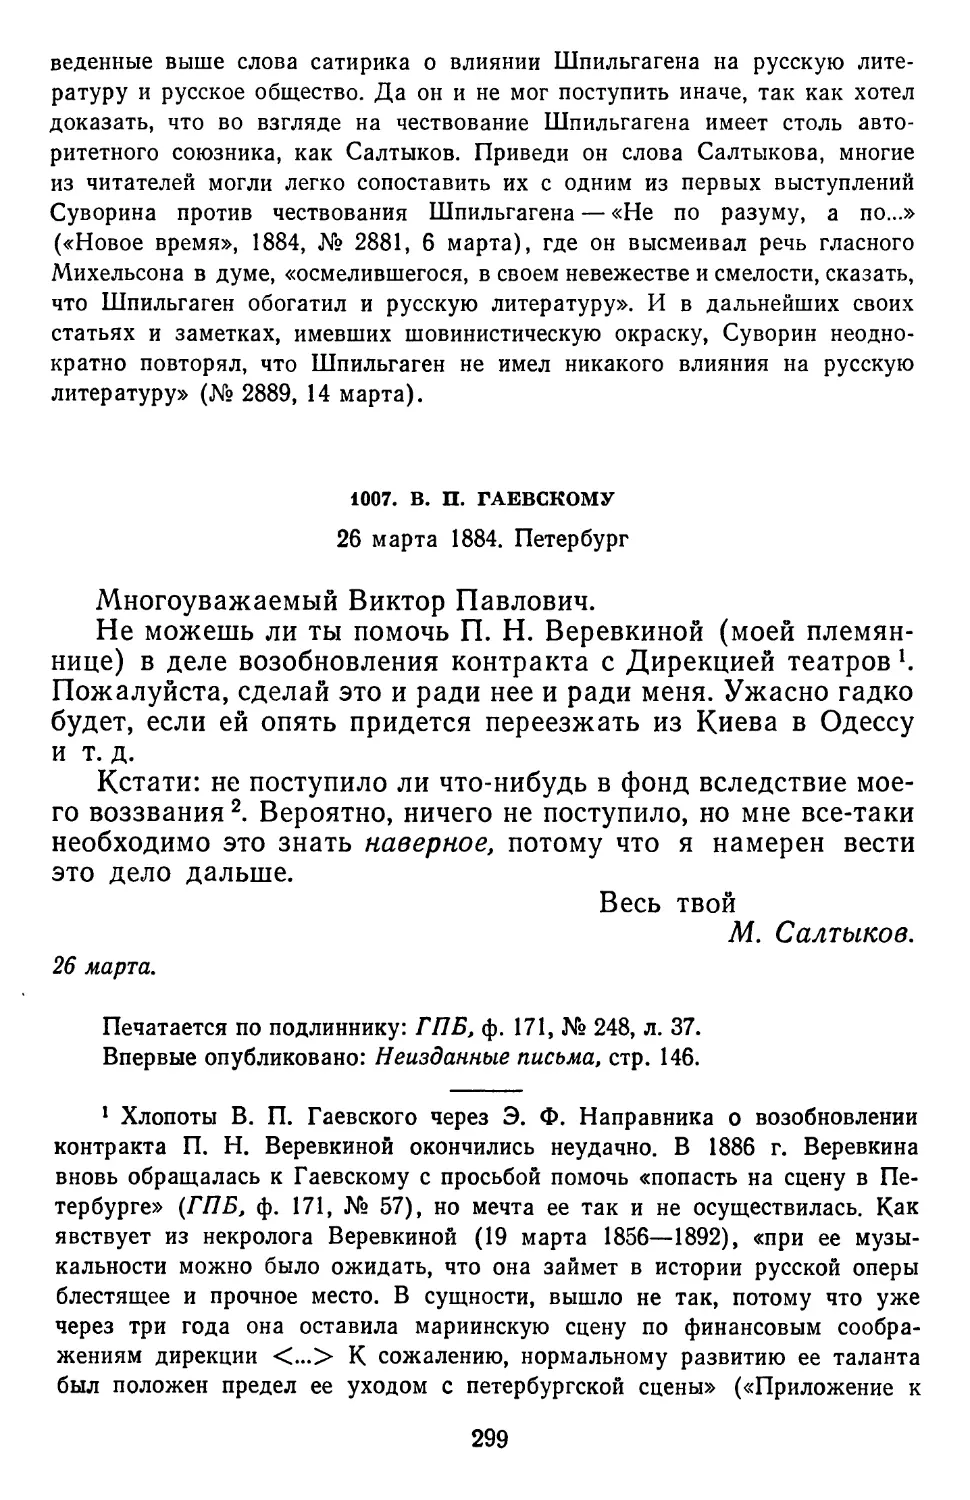 1007.В.П. Гаевскому. 26 марта 1884. Петербург